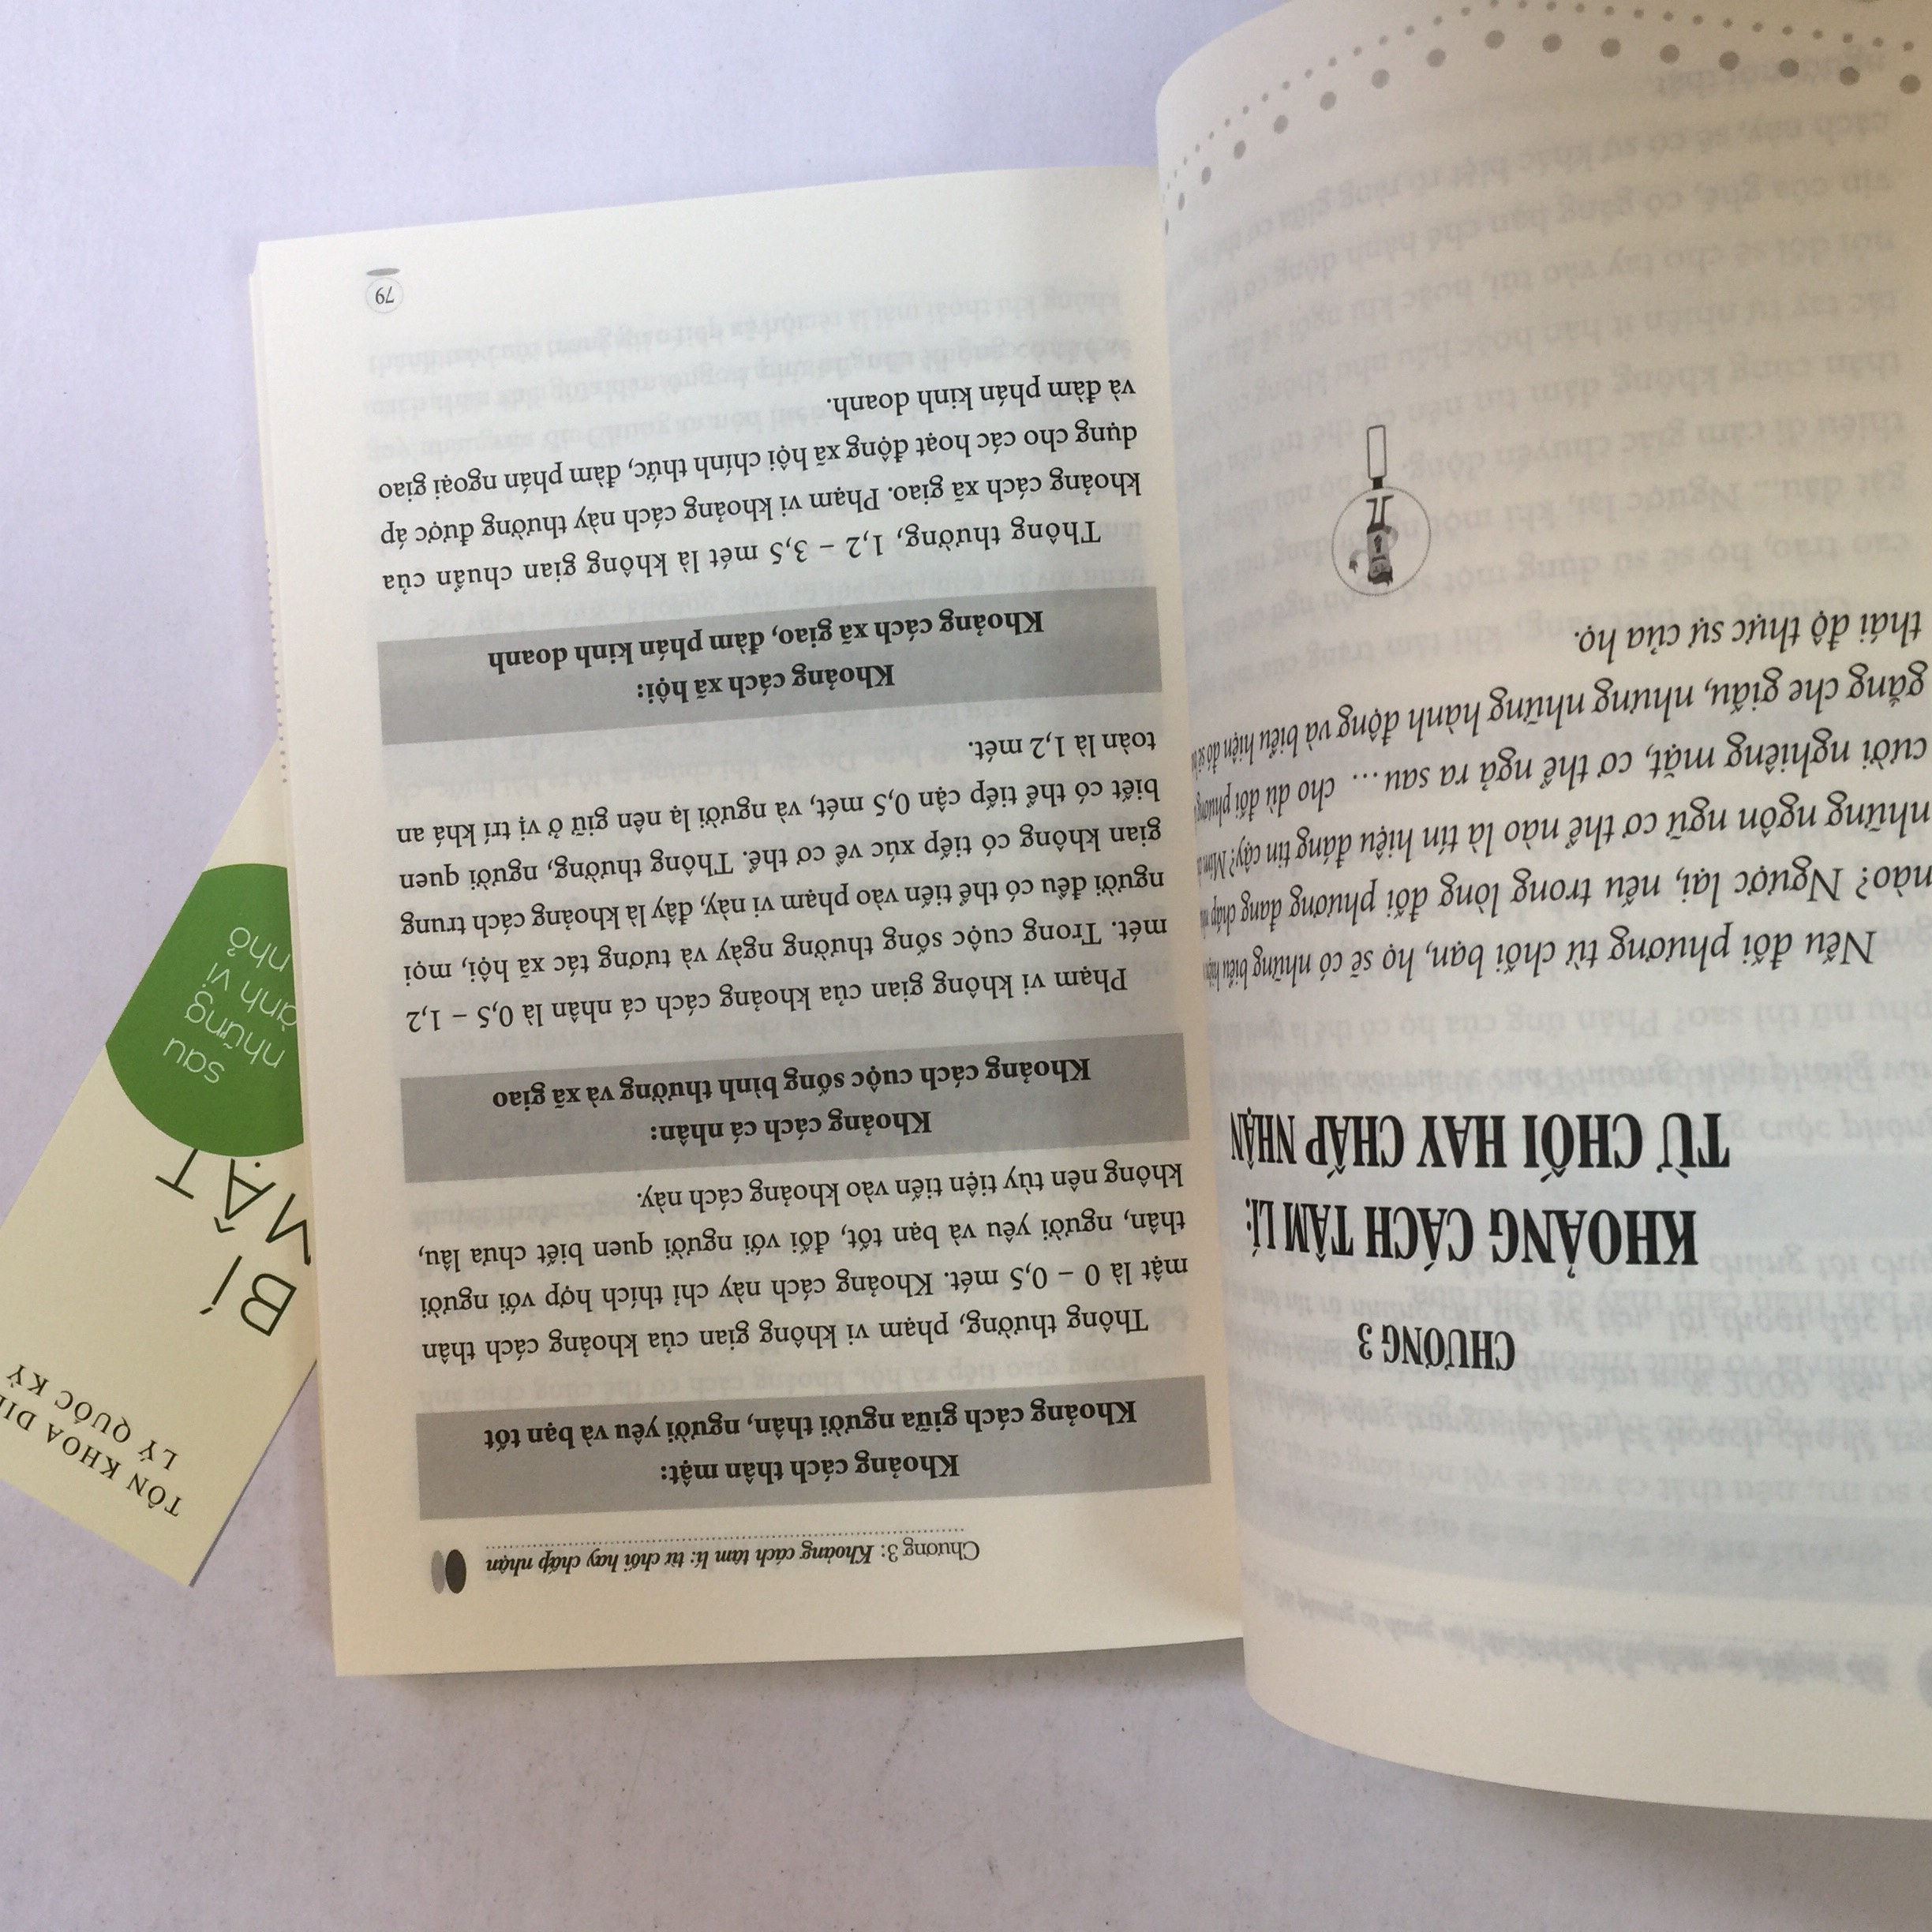 Combo 2 cuốn: Bí Mật Sau Những Hành Vi Nhỏ + Thông Điệp Từ Những Biểu Cảm Và Ngôn Ngữ Cơ Thể - Sức Mạnh Của Những Thay Đổi Tâm Lý Tinh Tế có bookmark